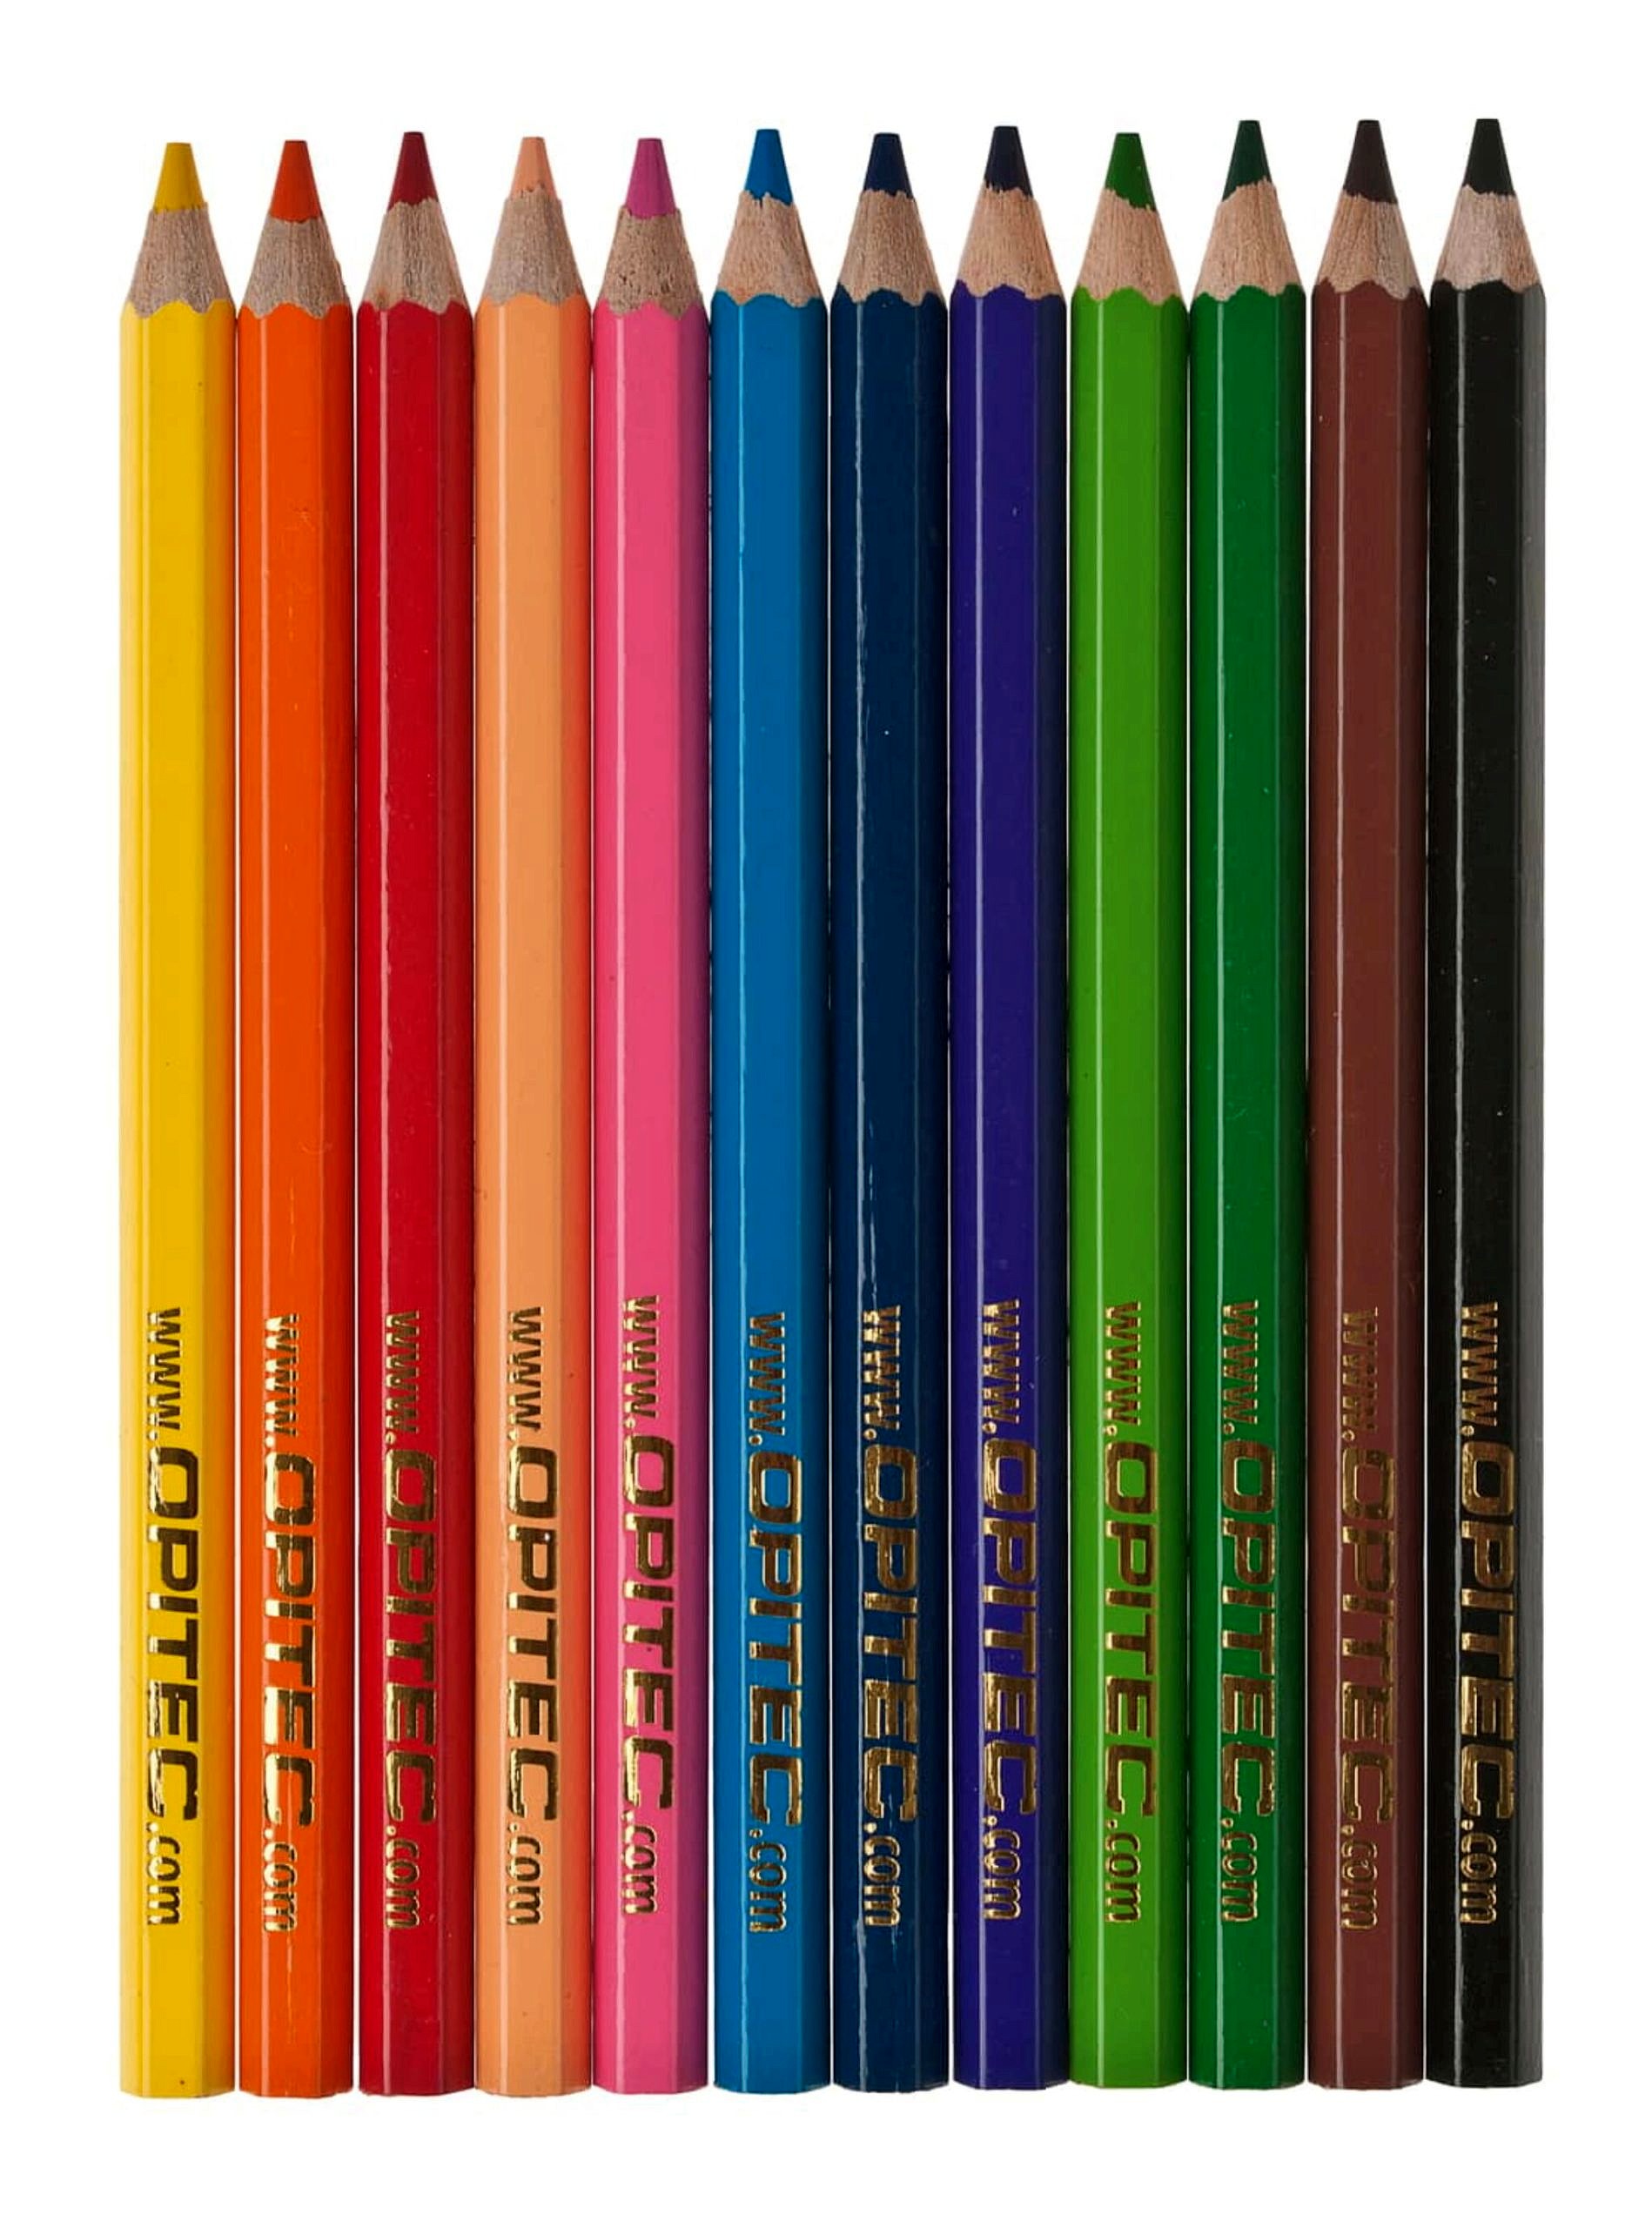 Ideali per Colorare Serie di matite con mina morbida per artisti dai colori vivaci 120 Matite Colorate Professionali per Adulti e Bambini Mandala Disegnare Astuccio Cancelleria Scuola